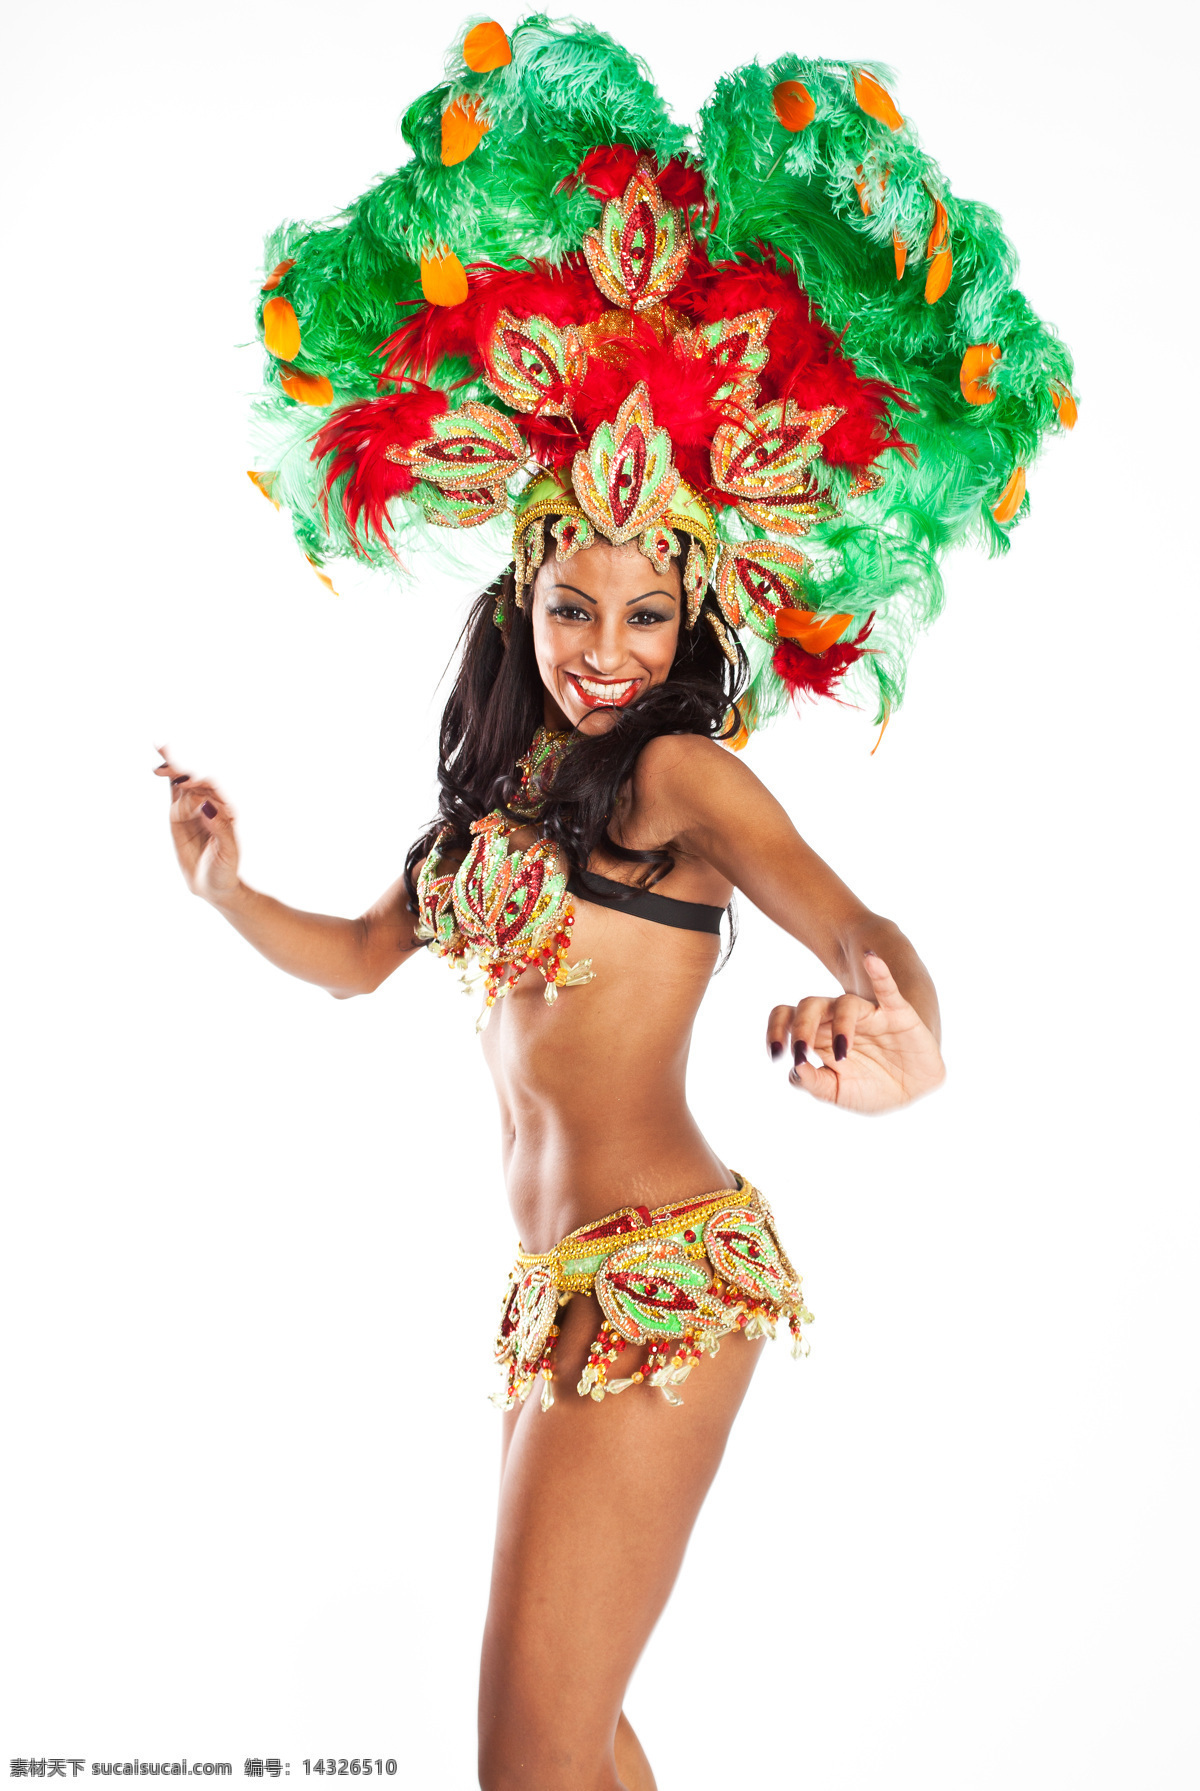 性感 巴西 美女图片 性感美女 巴西美女 外国女人 外国美女 桑巴舞 体育运动 生活百科